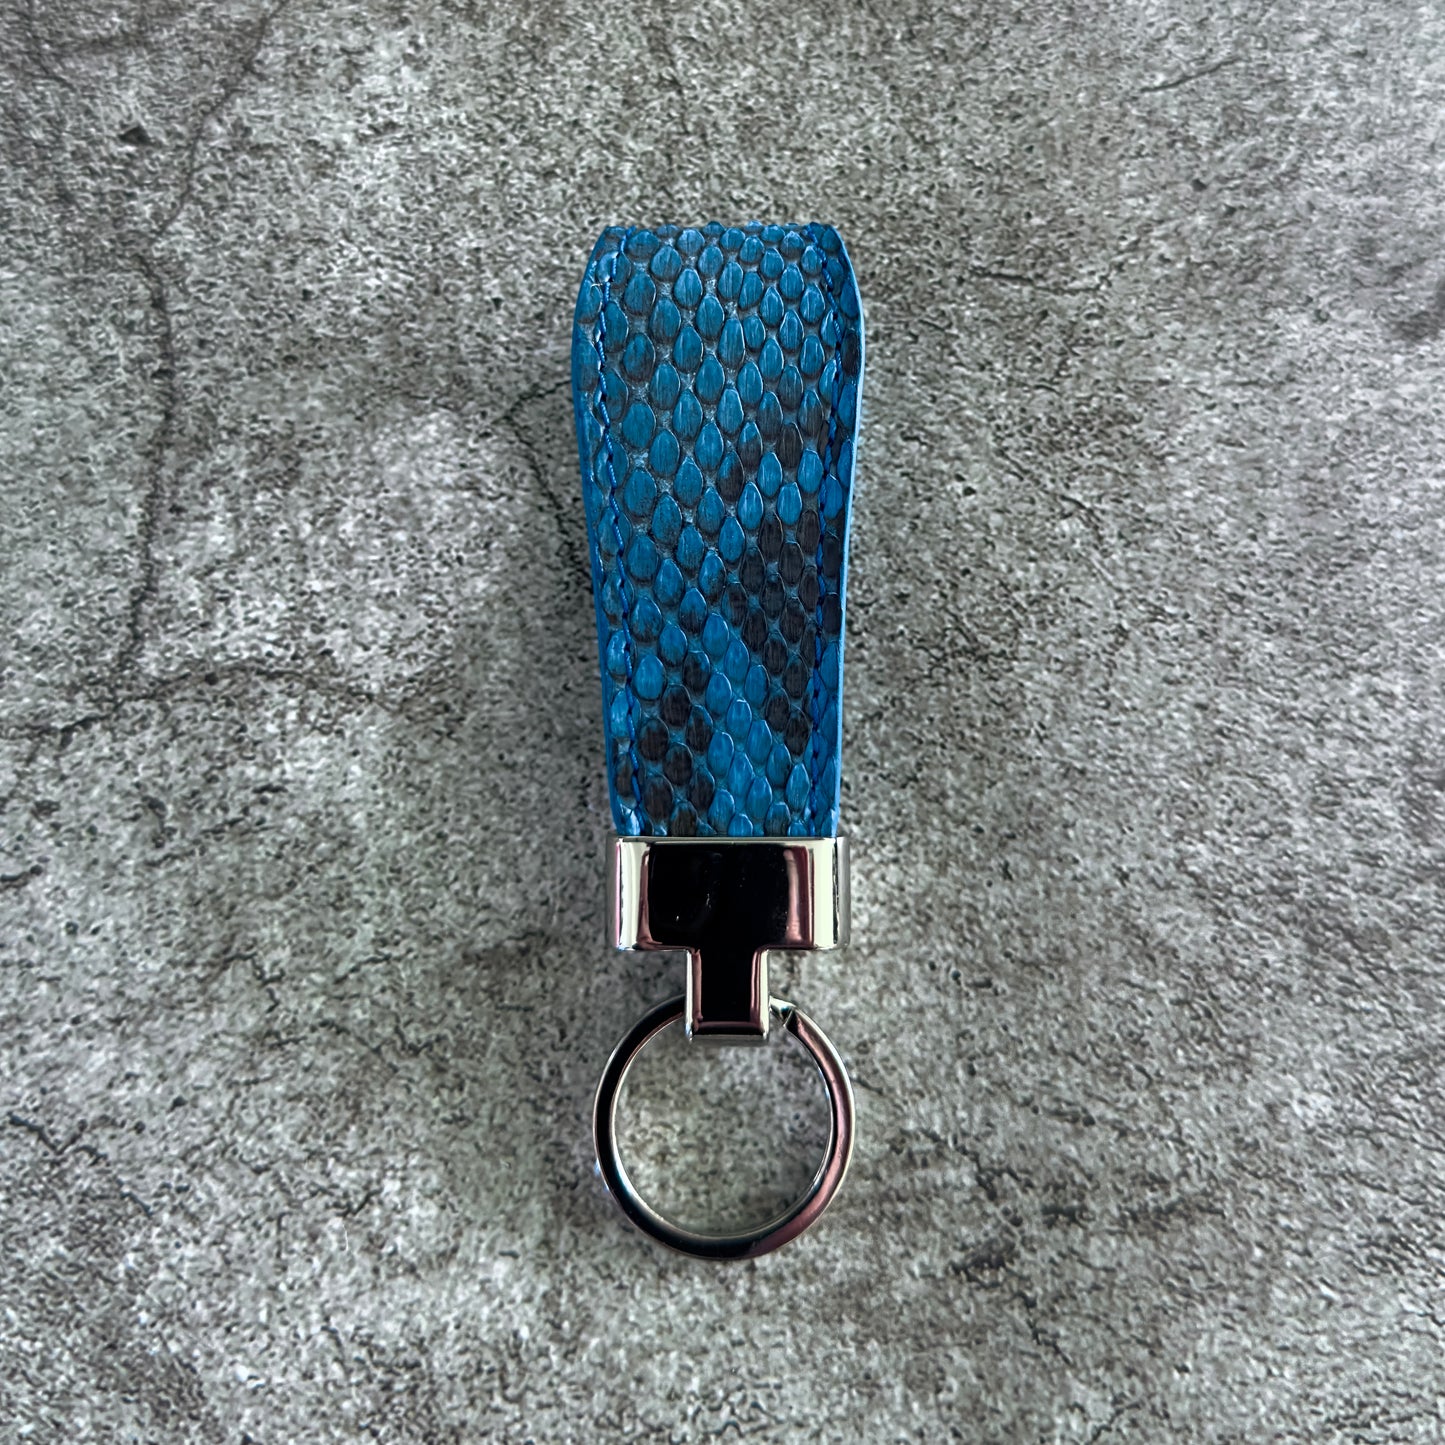 Sky Blue Python Leather Belt 1.5" (Polished Nickel)